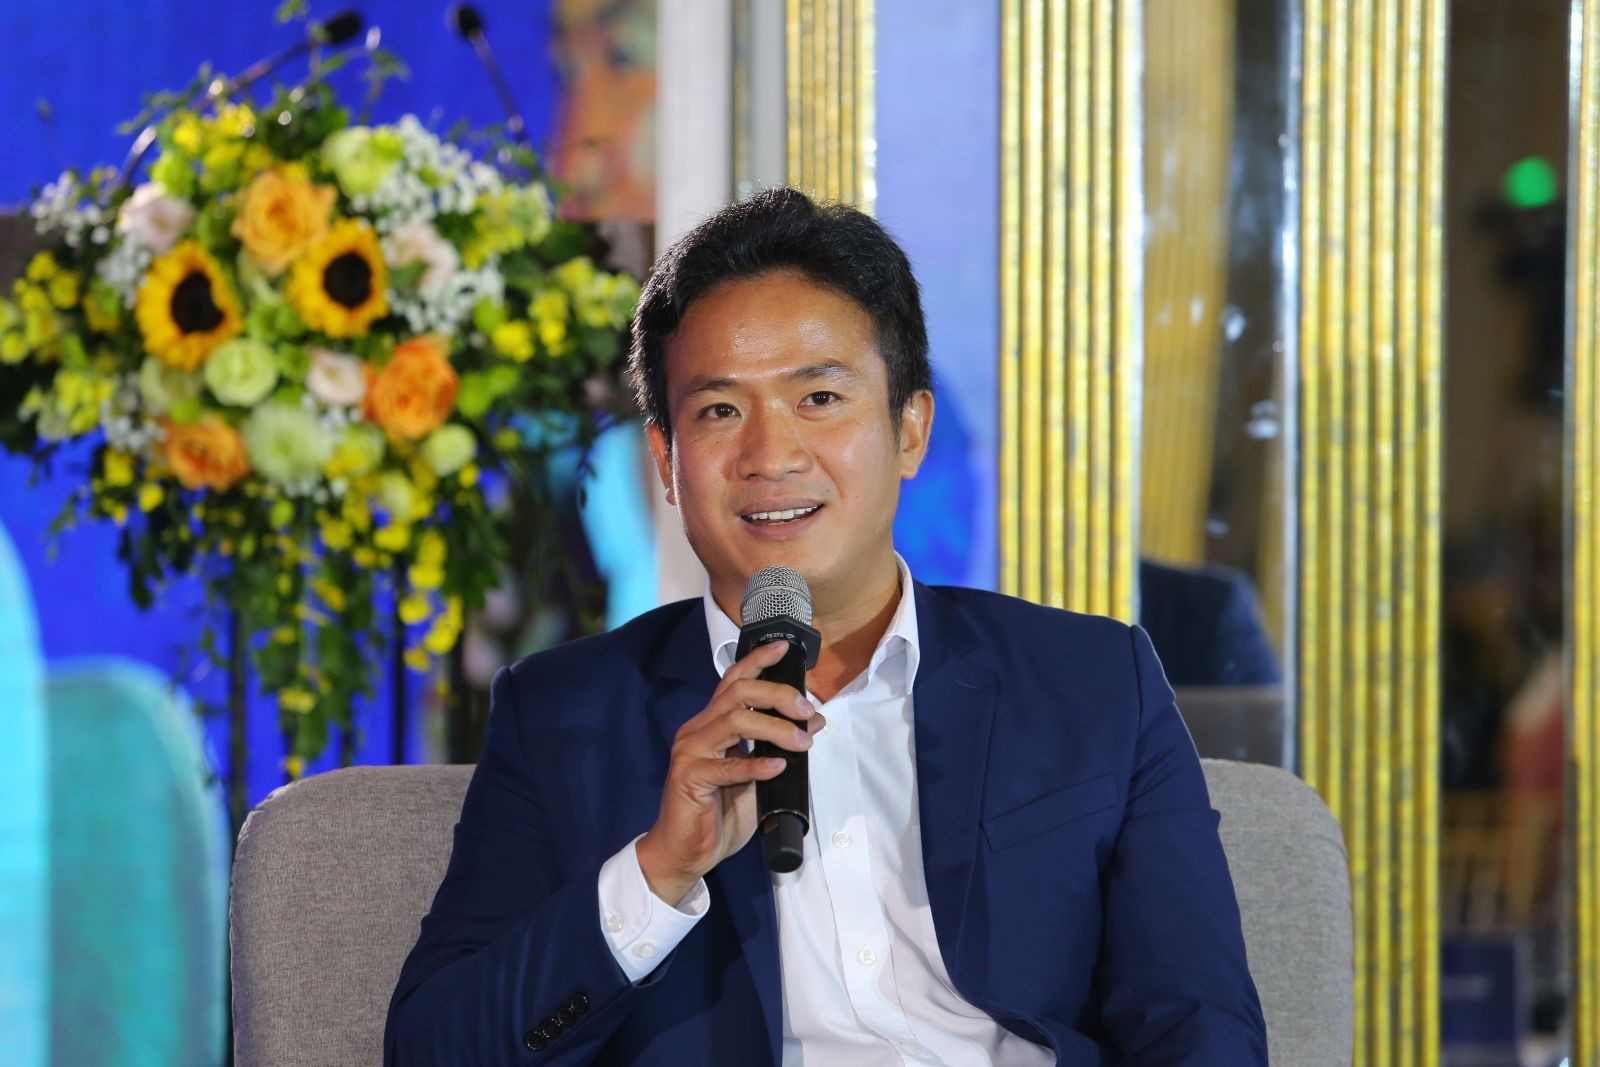 
Ông Nguyễn Công Chính, Giám đốc Công nghệ - Trưởng Ban Chuyển đổi số Công ty cổ phần Dịch vụ &amp; Địa ốc Đất Xanh
